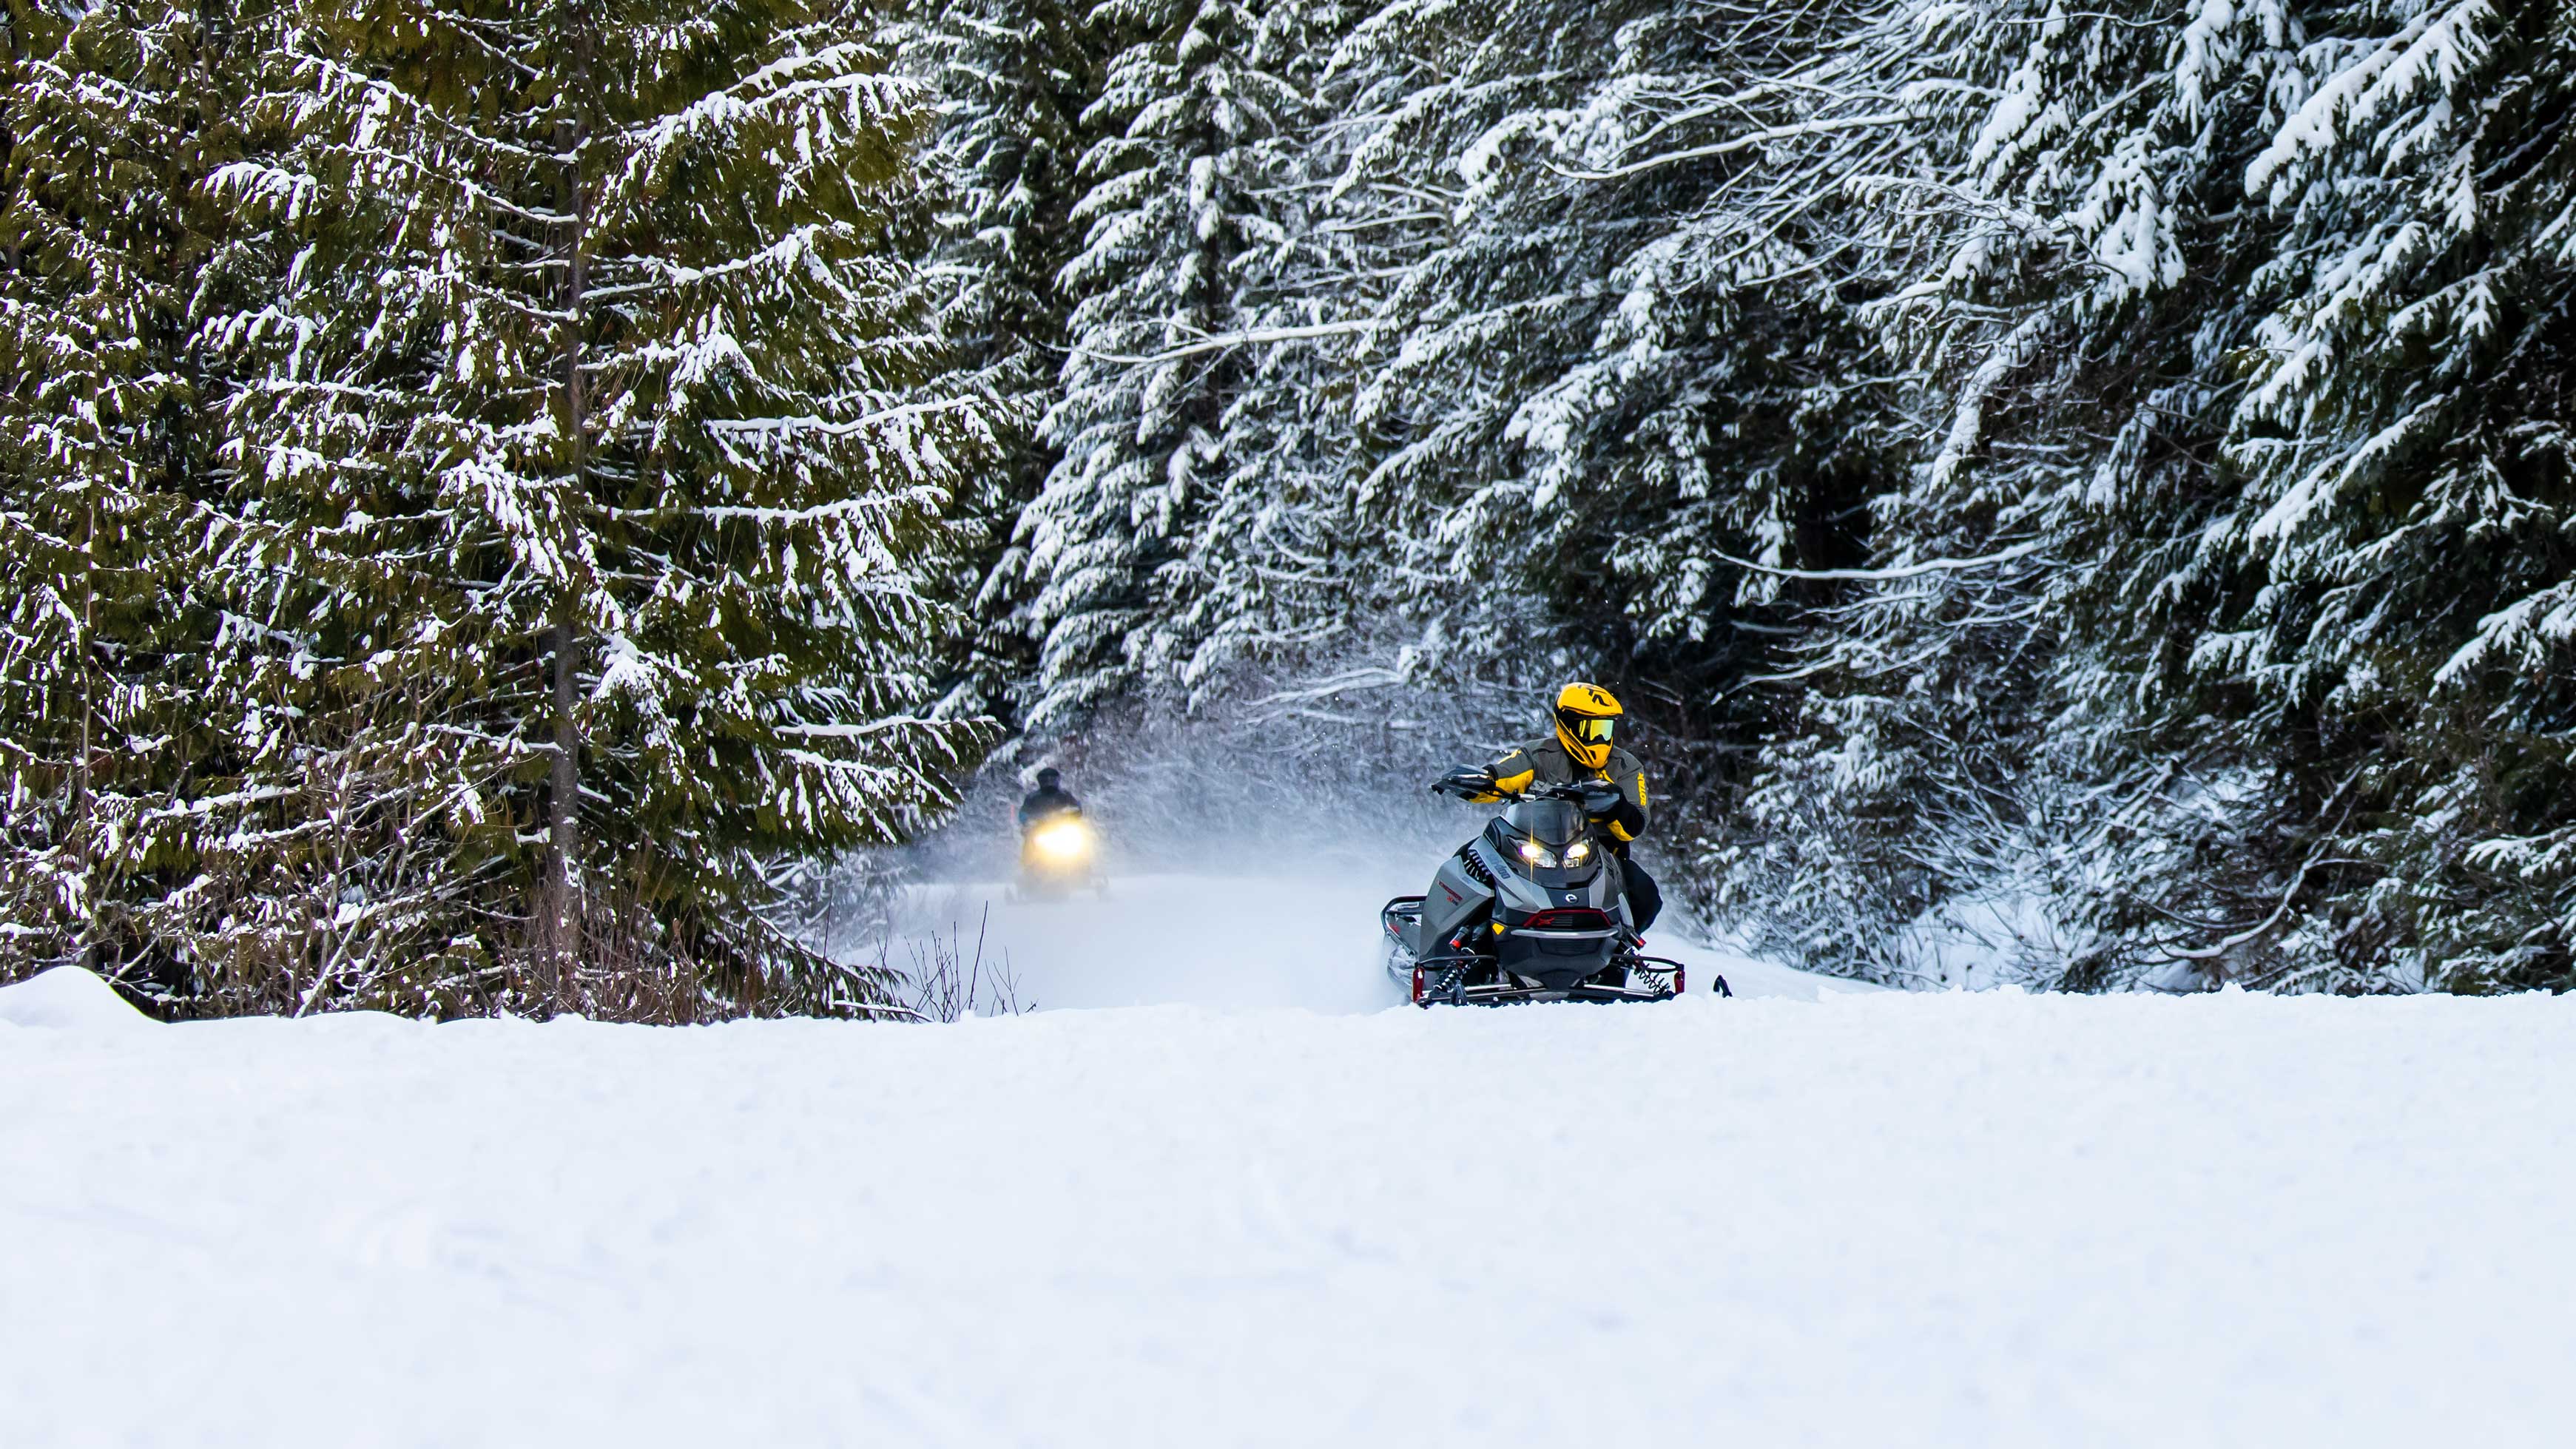 Ski-Doo körning på ett spår i en snöig skog.